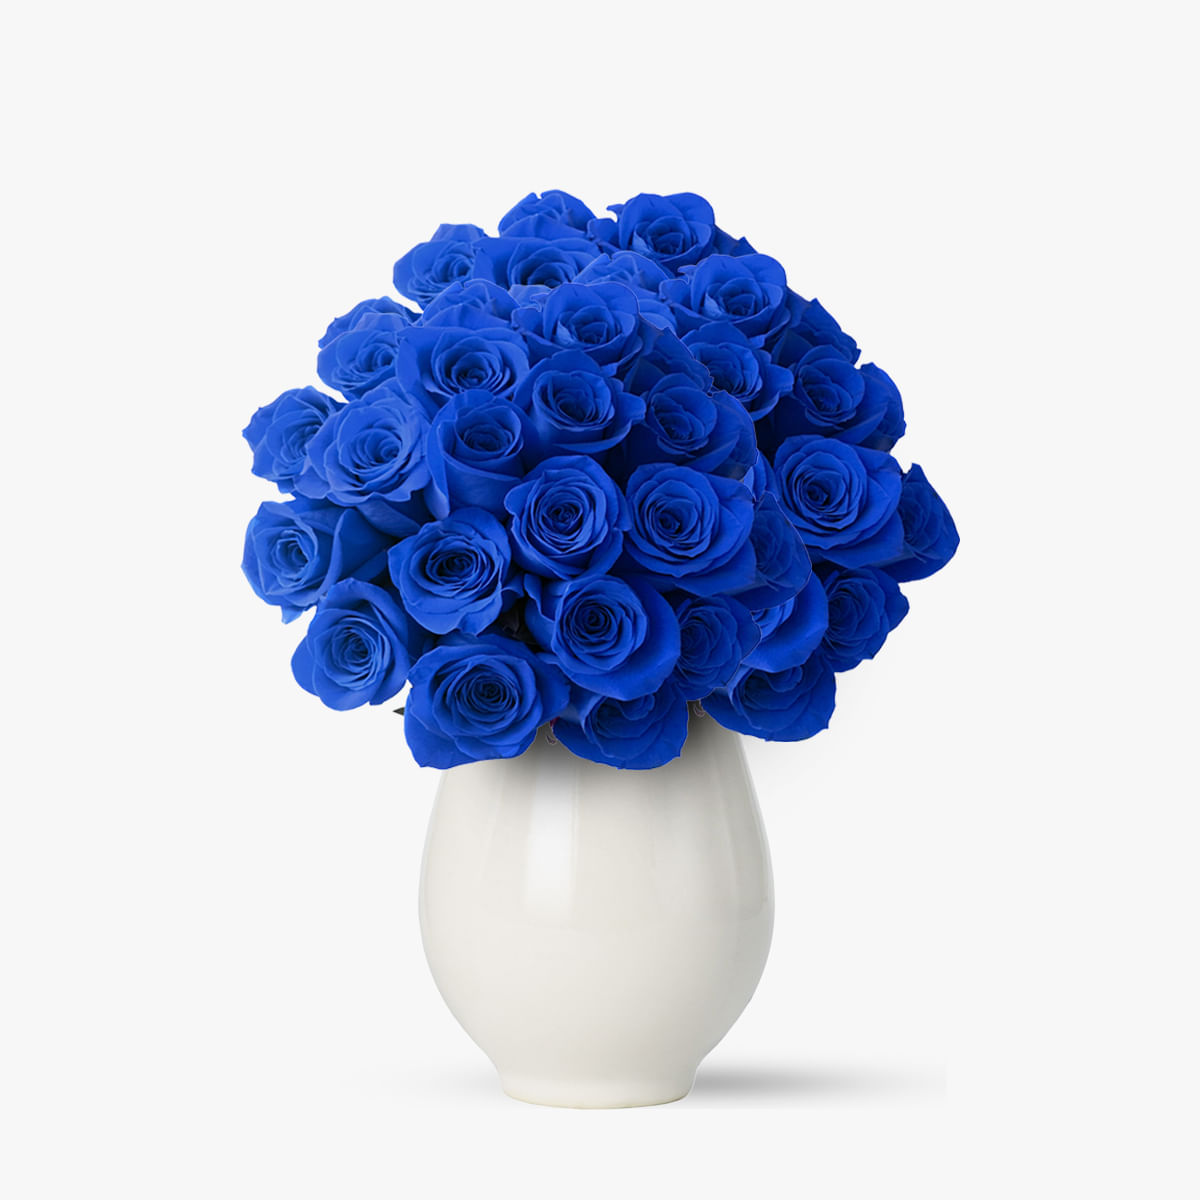 Buchet de 55 trandafiri albastri – Standard